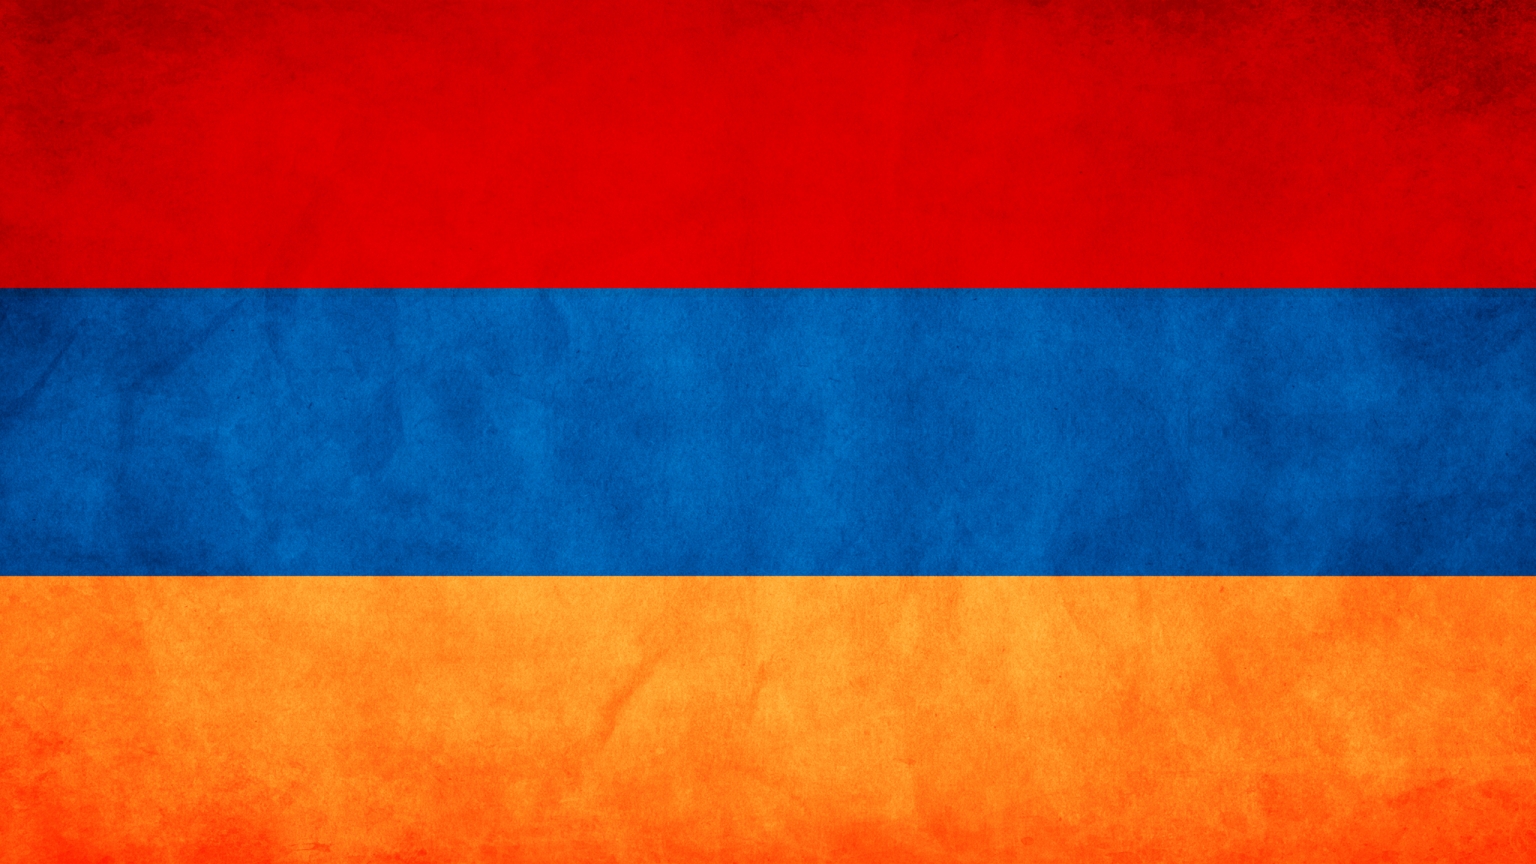 Armenia Flag for 1536 x 864 HDTV resolution